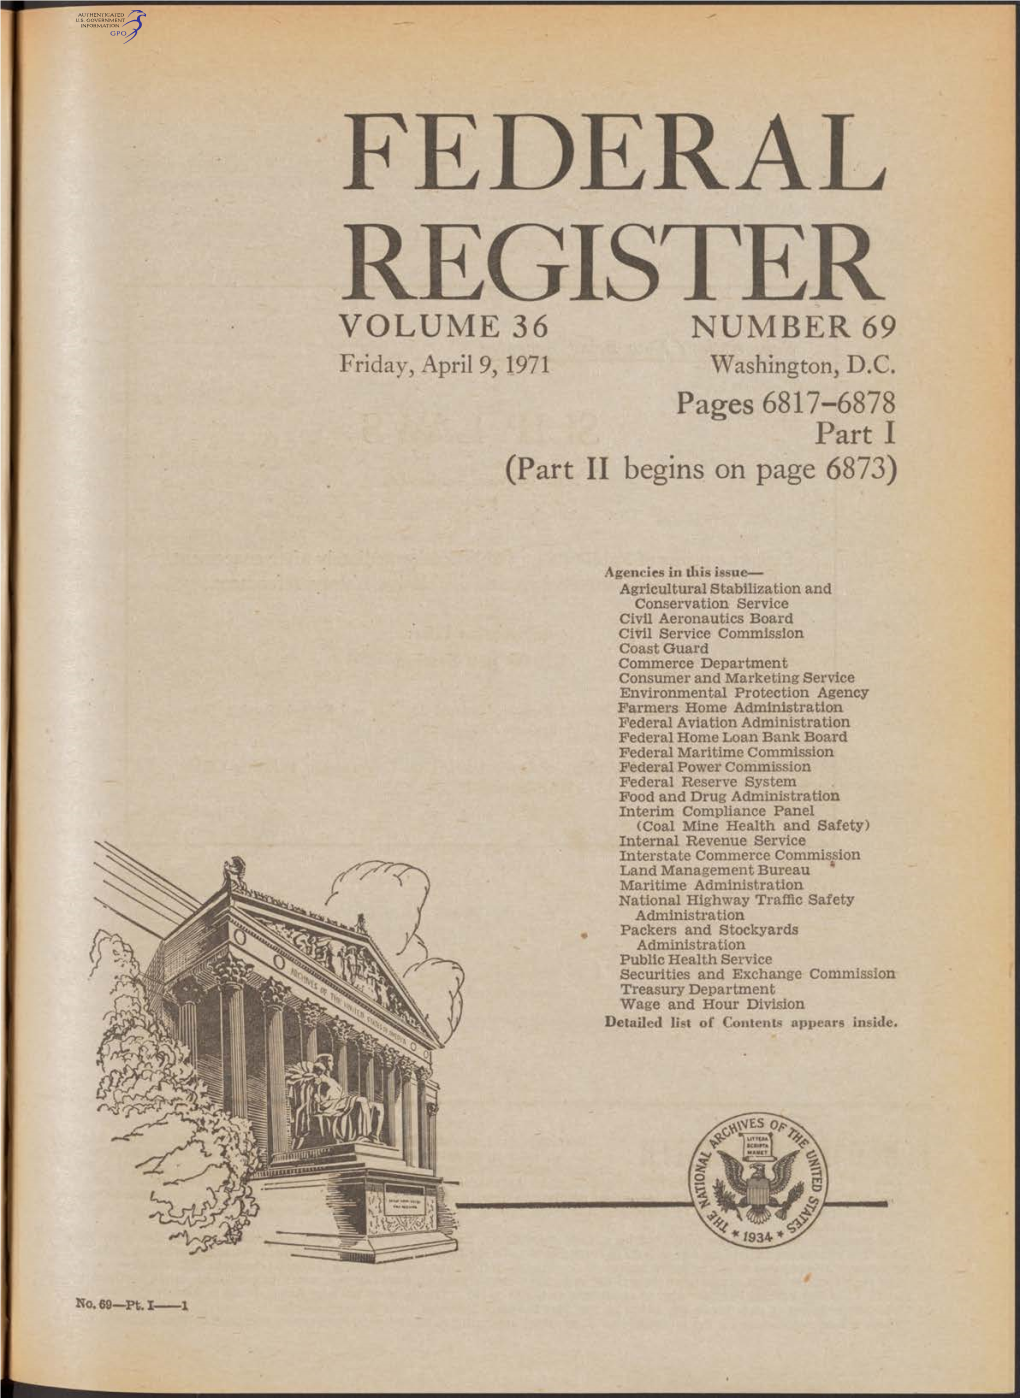 FEDERAL REGISTER VOLUME 36 NUMBER 69 Friday, April 9,1971 Washington, D.C